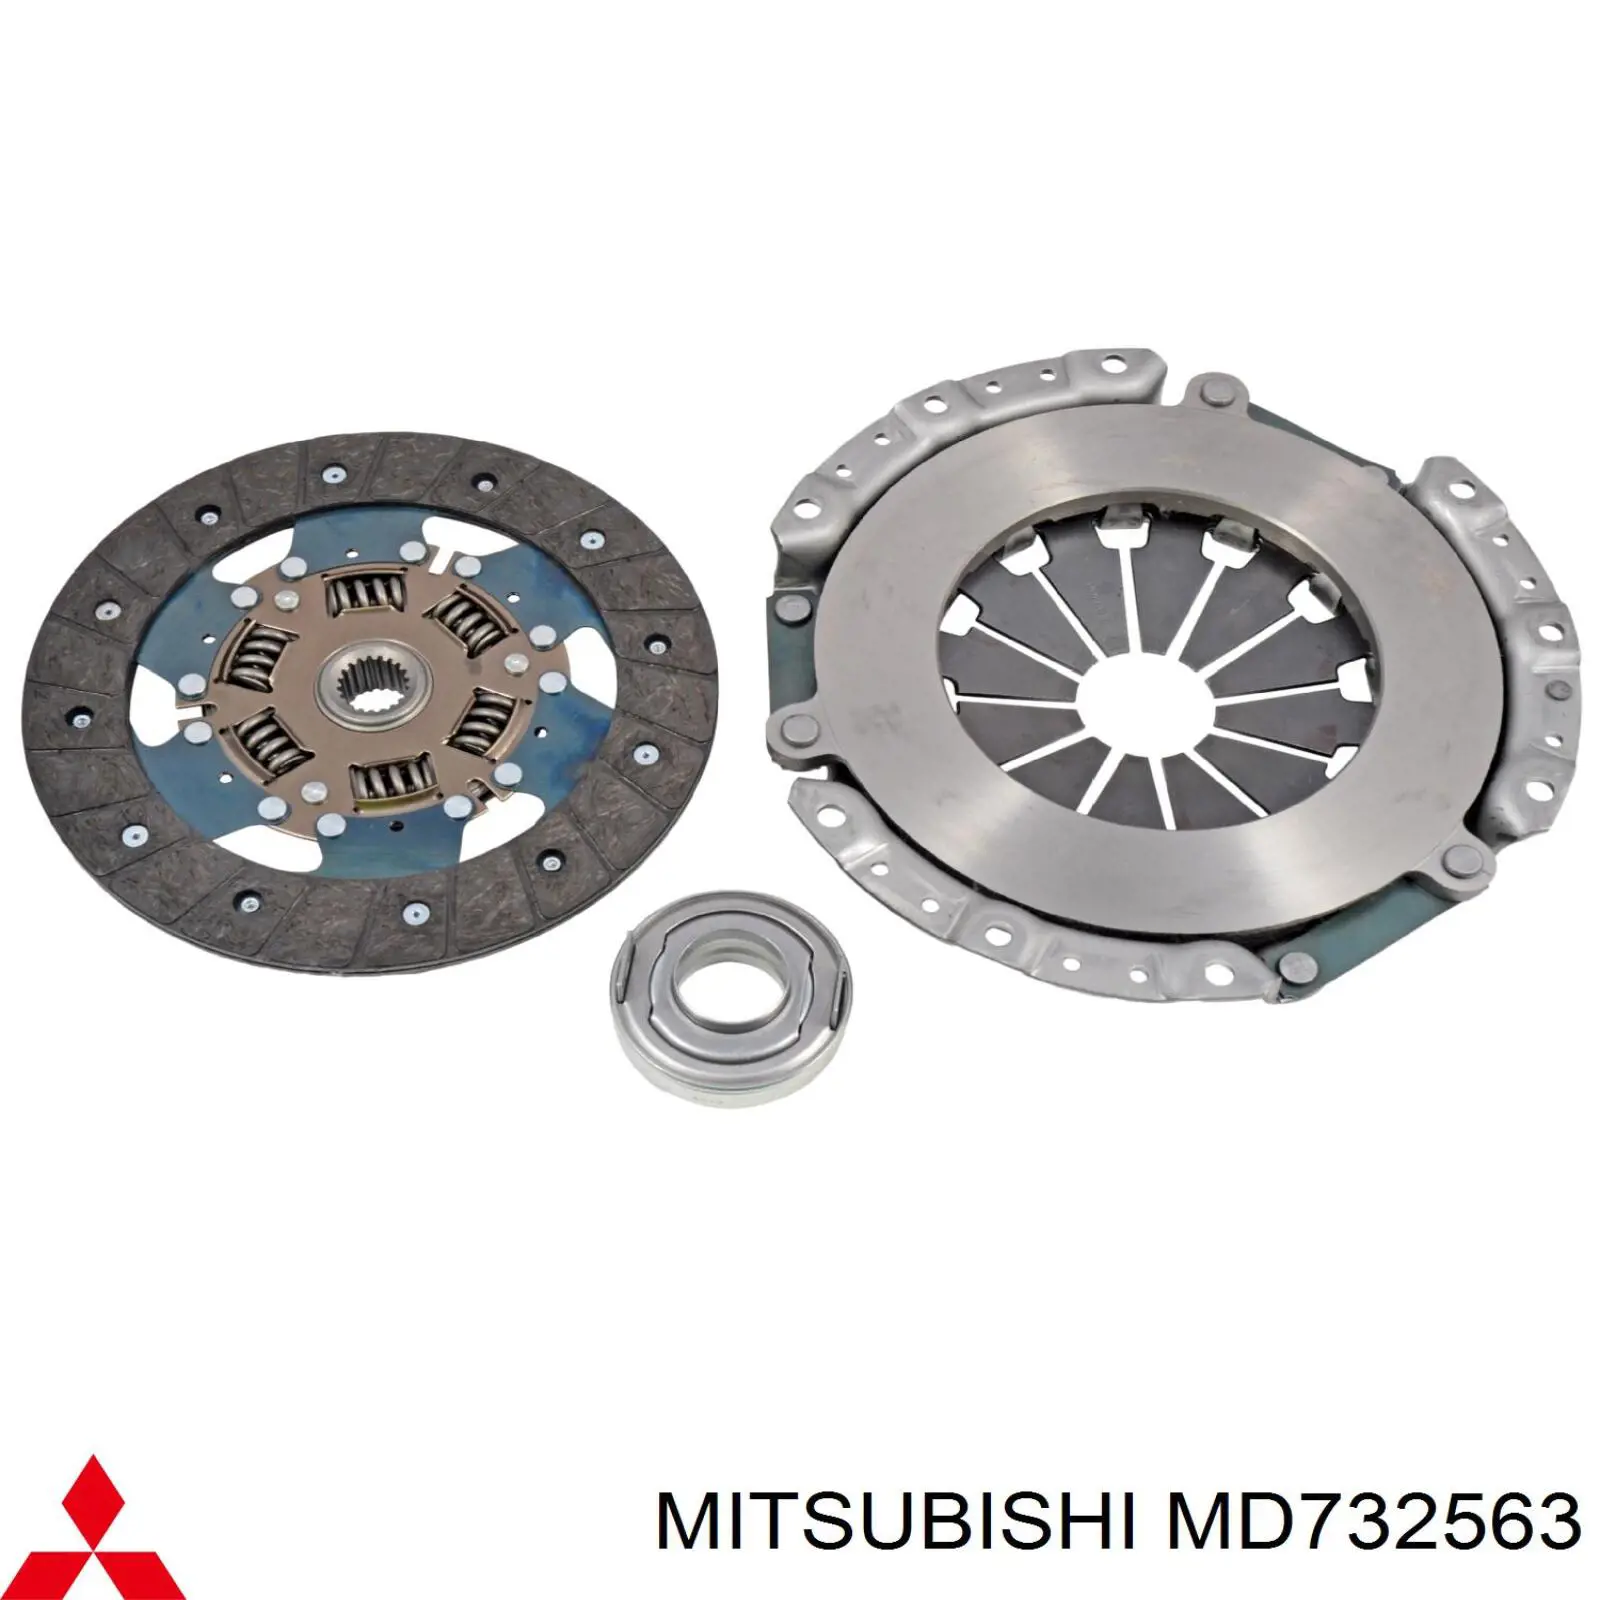 MD732563 Mitsubishi plato de presión de embrague